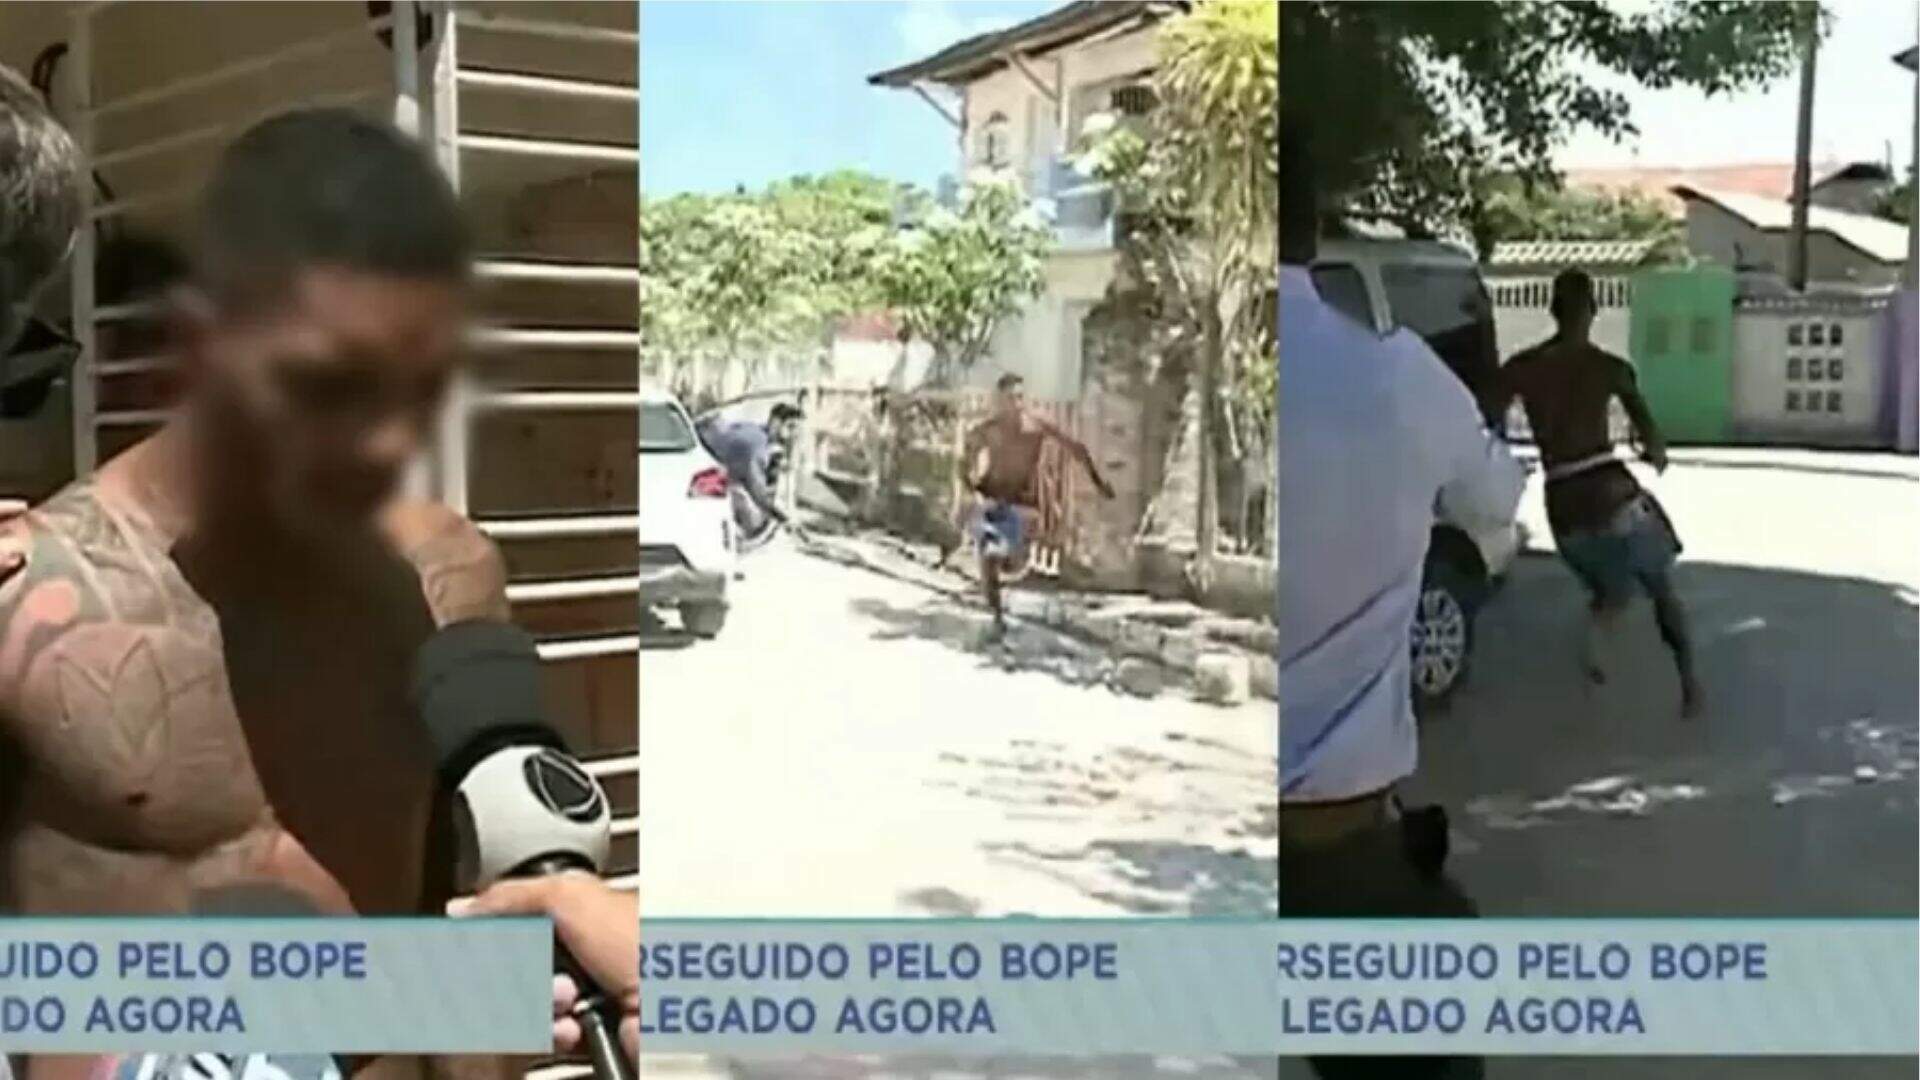 Confusão na TV! Homem foge da polícia ao vivo, repórter corre atrás e momento viraliza - Metropolitana FM